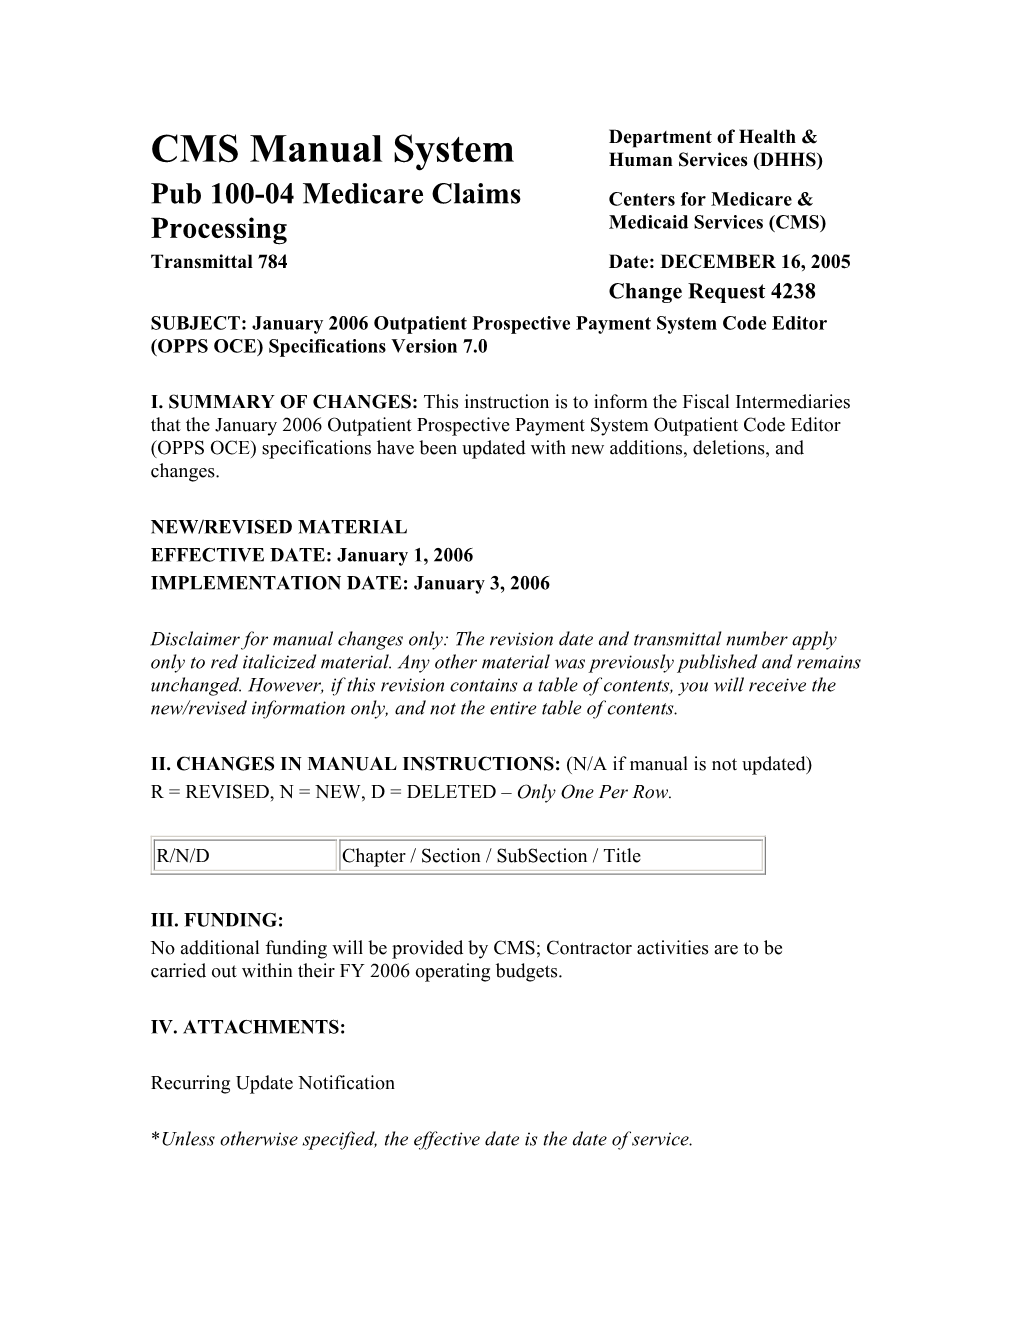 Pub 100-04 Medicare Claims Processing